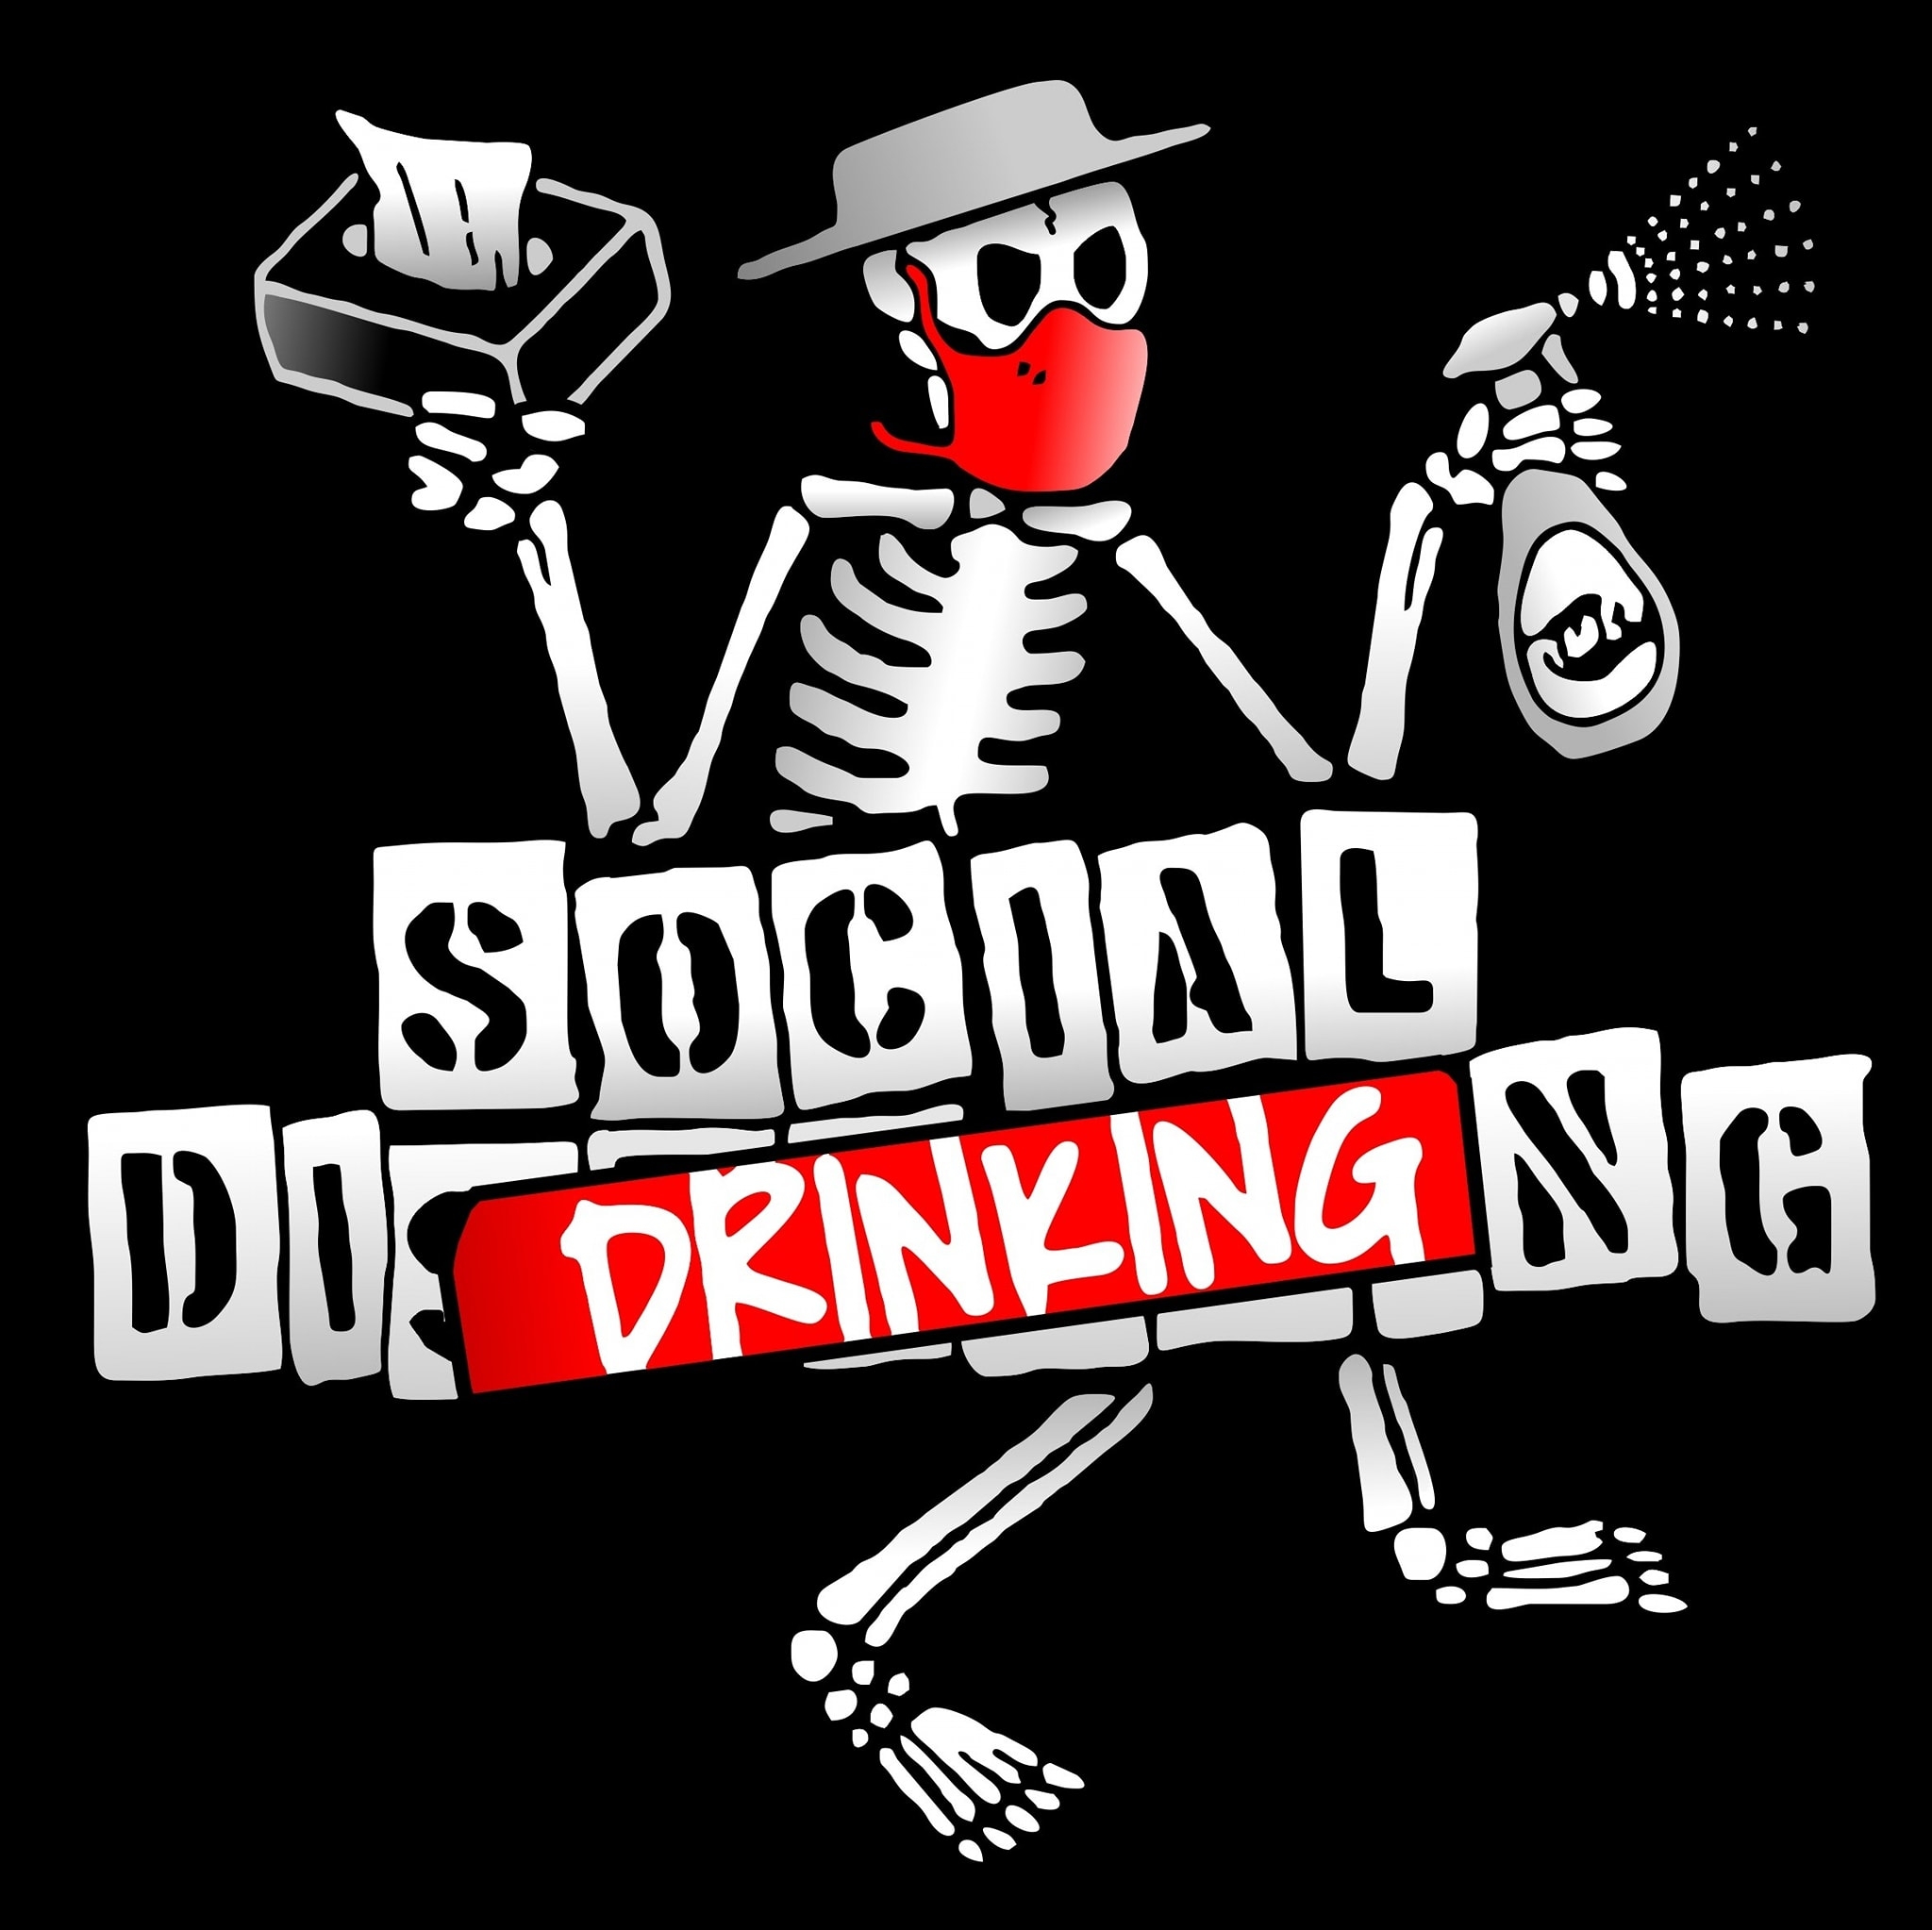 Social Drinking